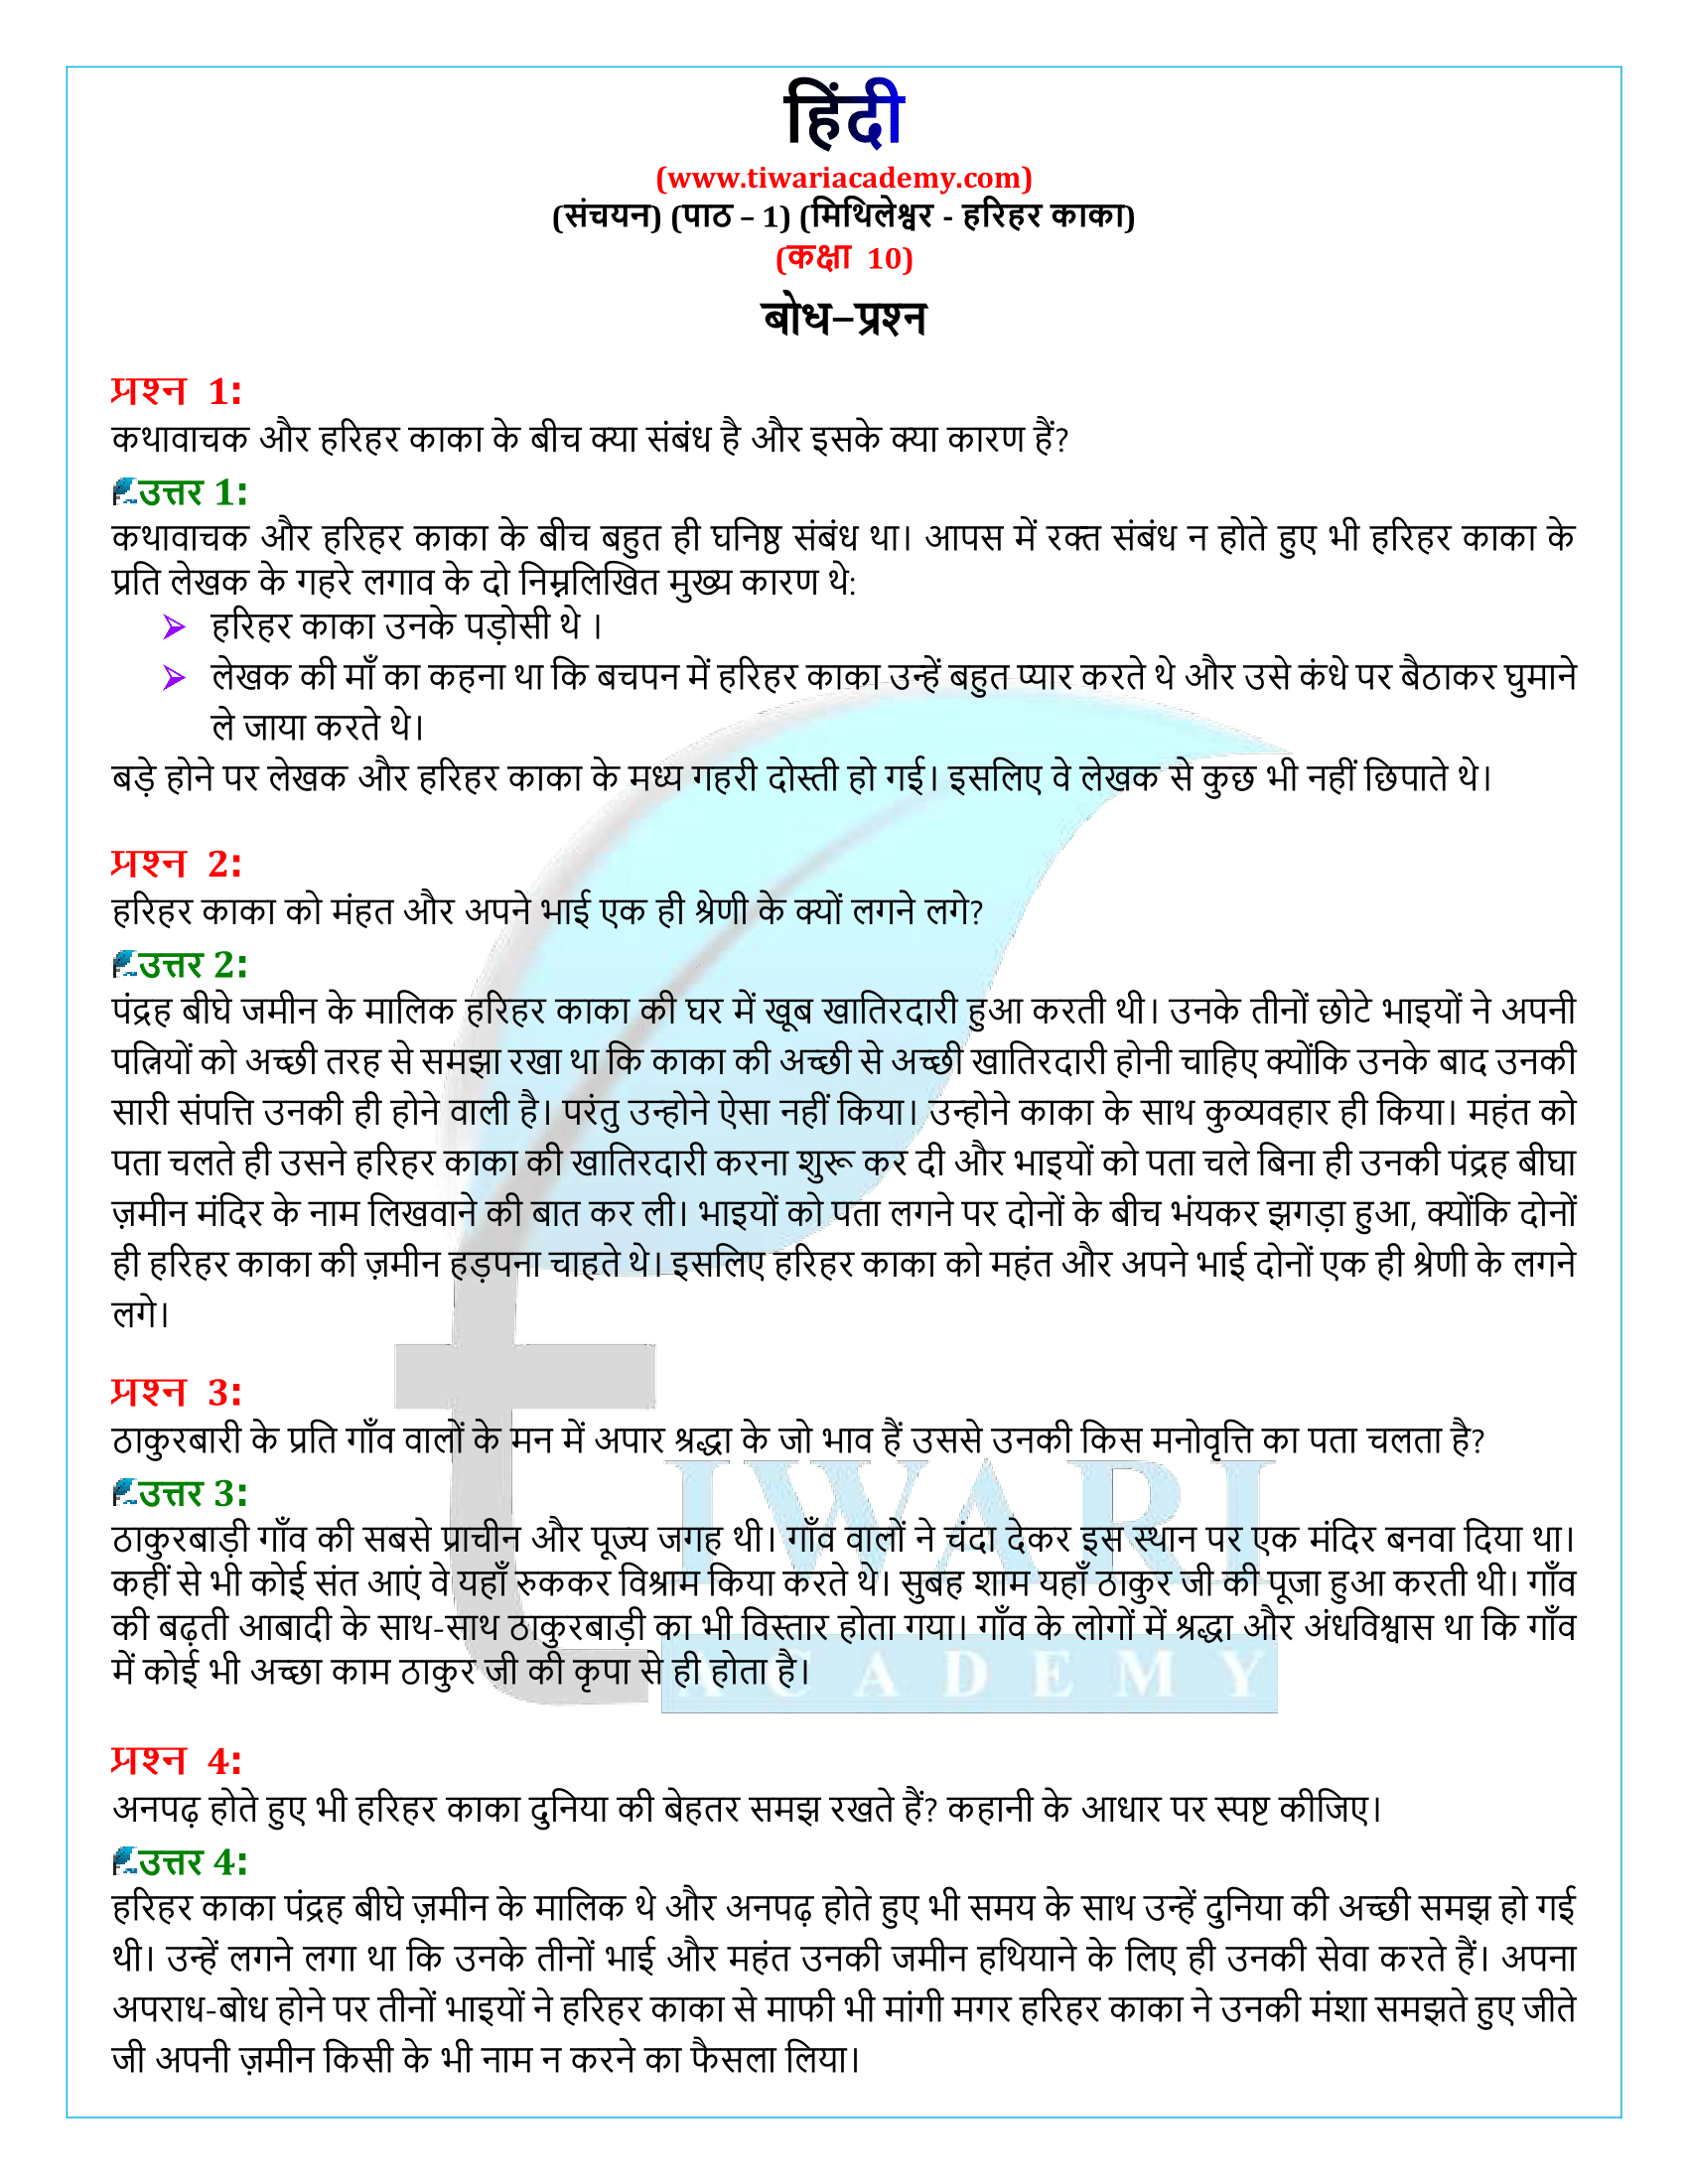 कक्षा 10 हिंदी संचयन अध्याय 1 के प्रश्न उत्तर